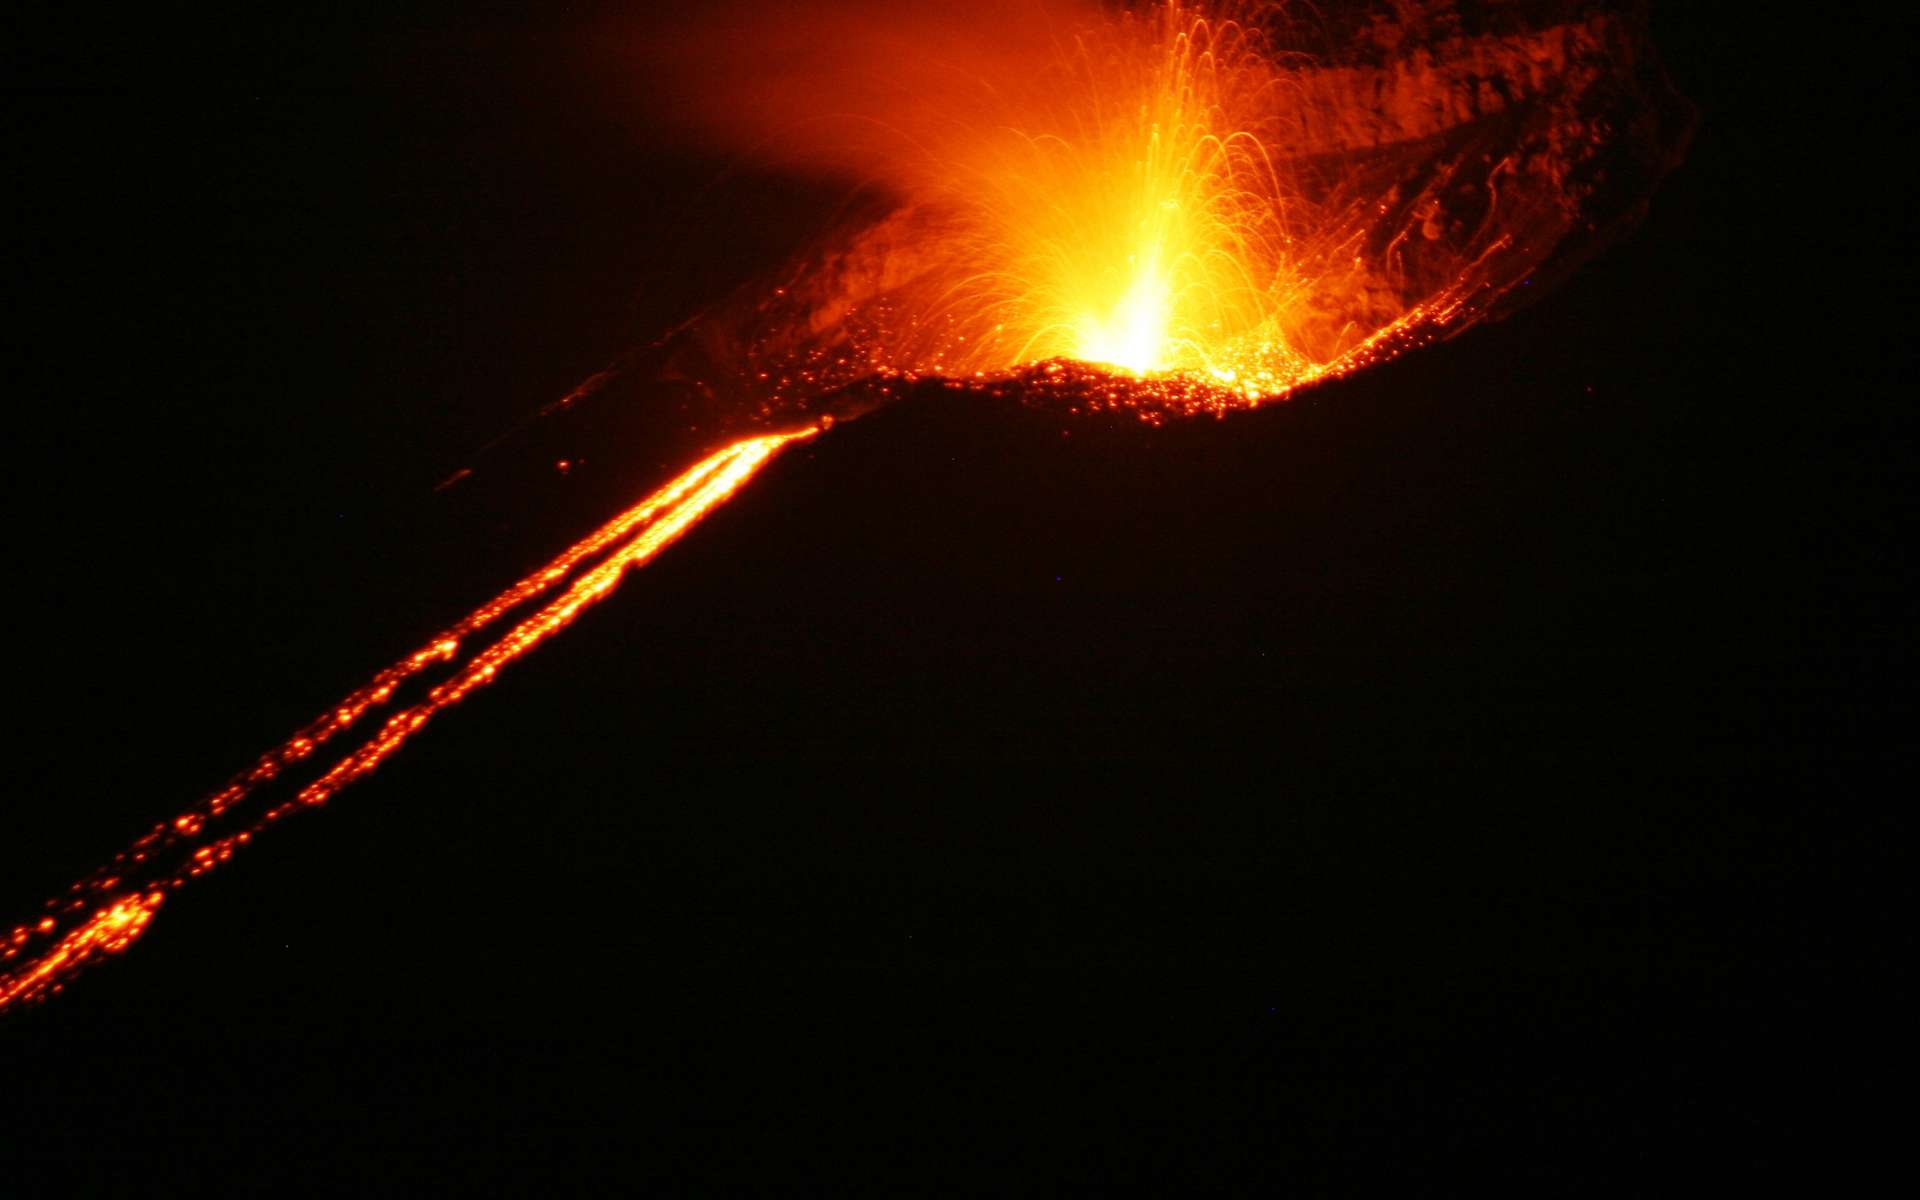 L'Anak Krakatoa en éruption en 2008. © Thomas.Schiet, Wikimedia Commons, domaine public